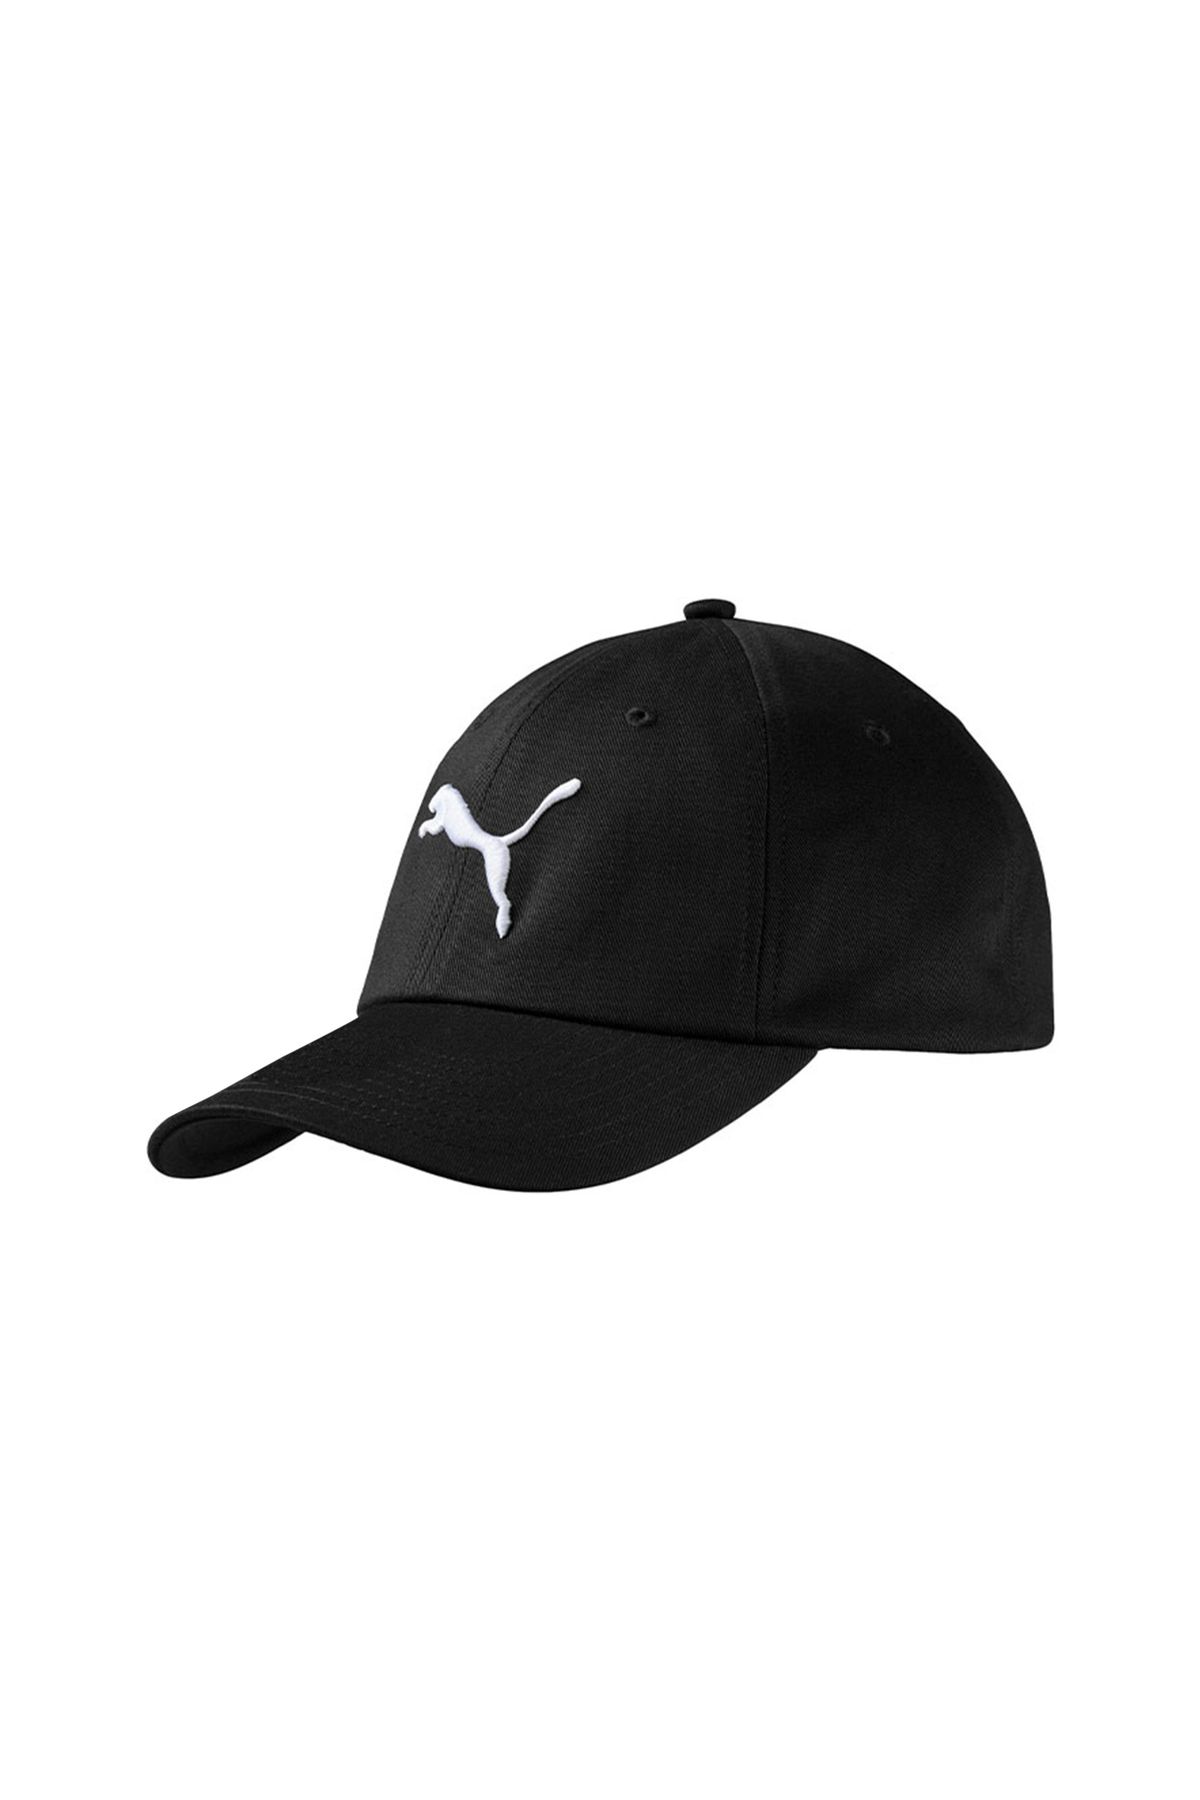 Puma کلاه ورزشی مناسب برای استفاده روزانه